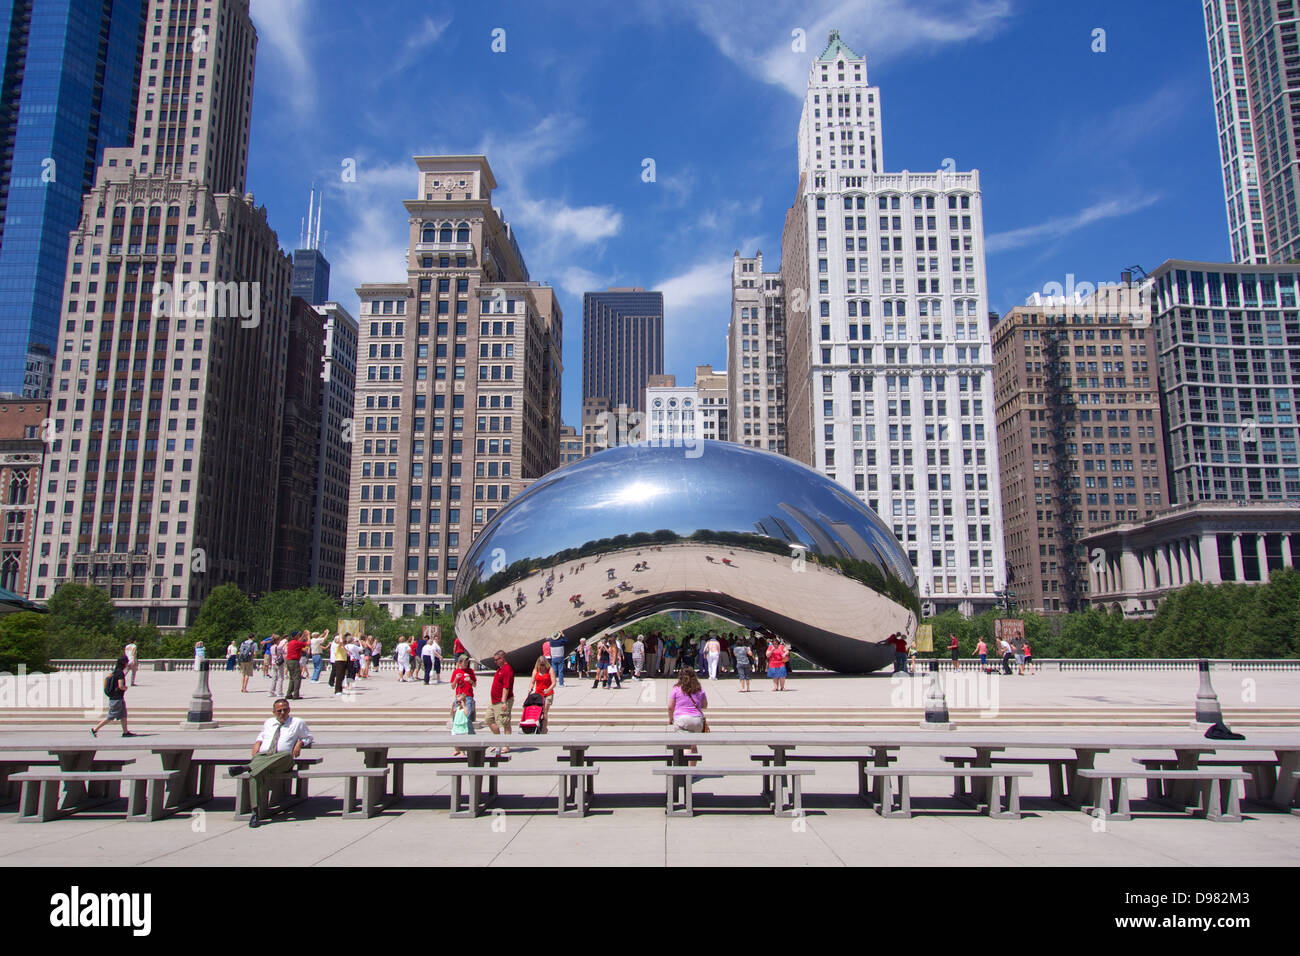 Cloud Gate von Anish Kapoor, auch bekannt als "The Bean". Millennium Park, Chicago. Stockfoto